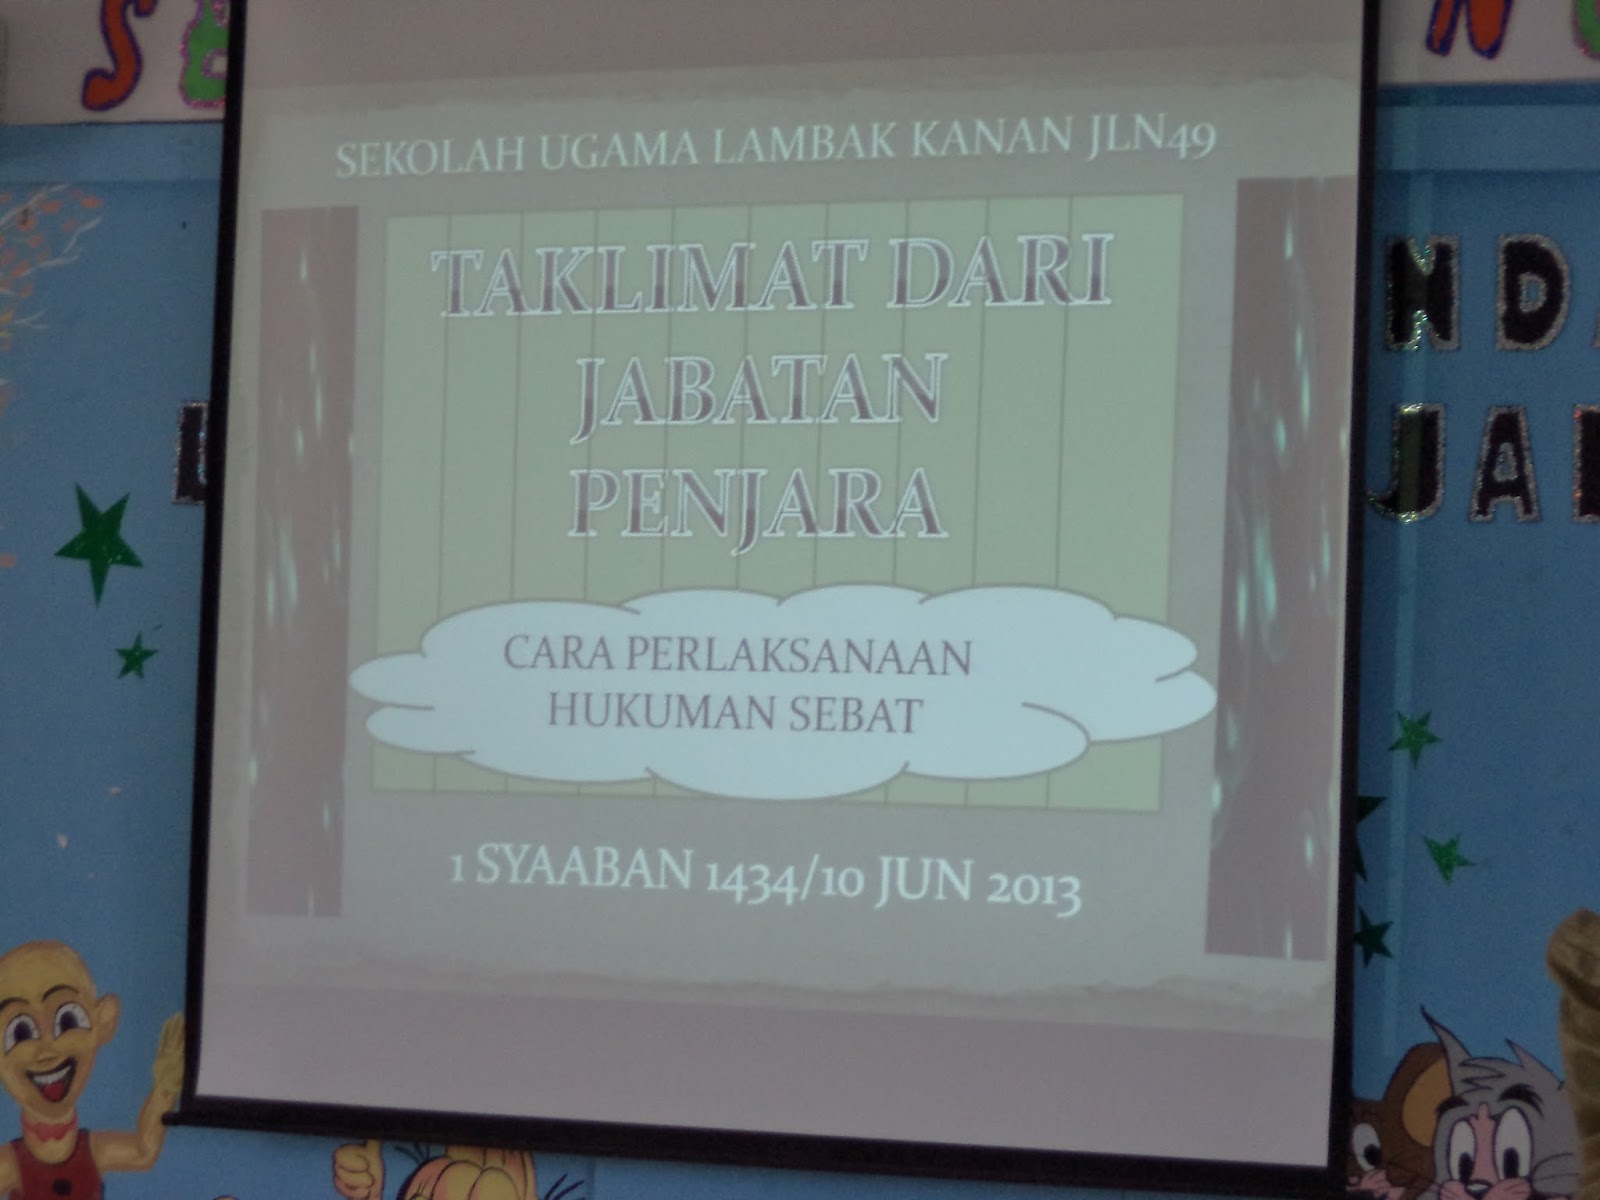 Sekolah Ugama Lambak Kanan Jalan 49: June 2013